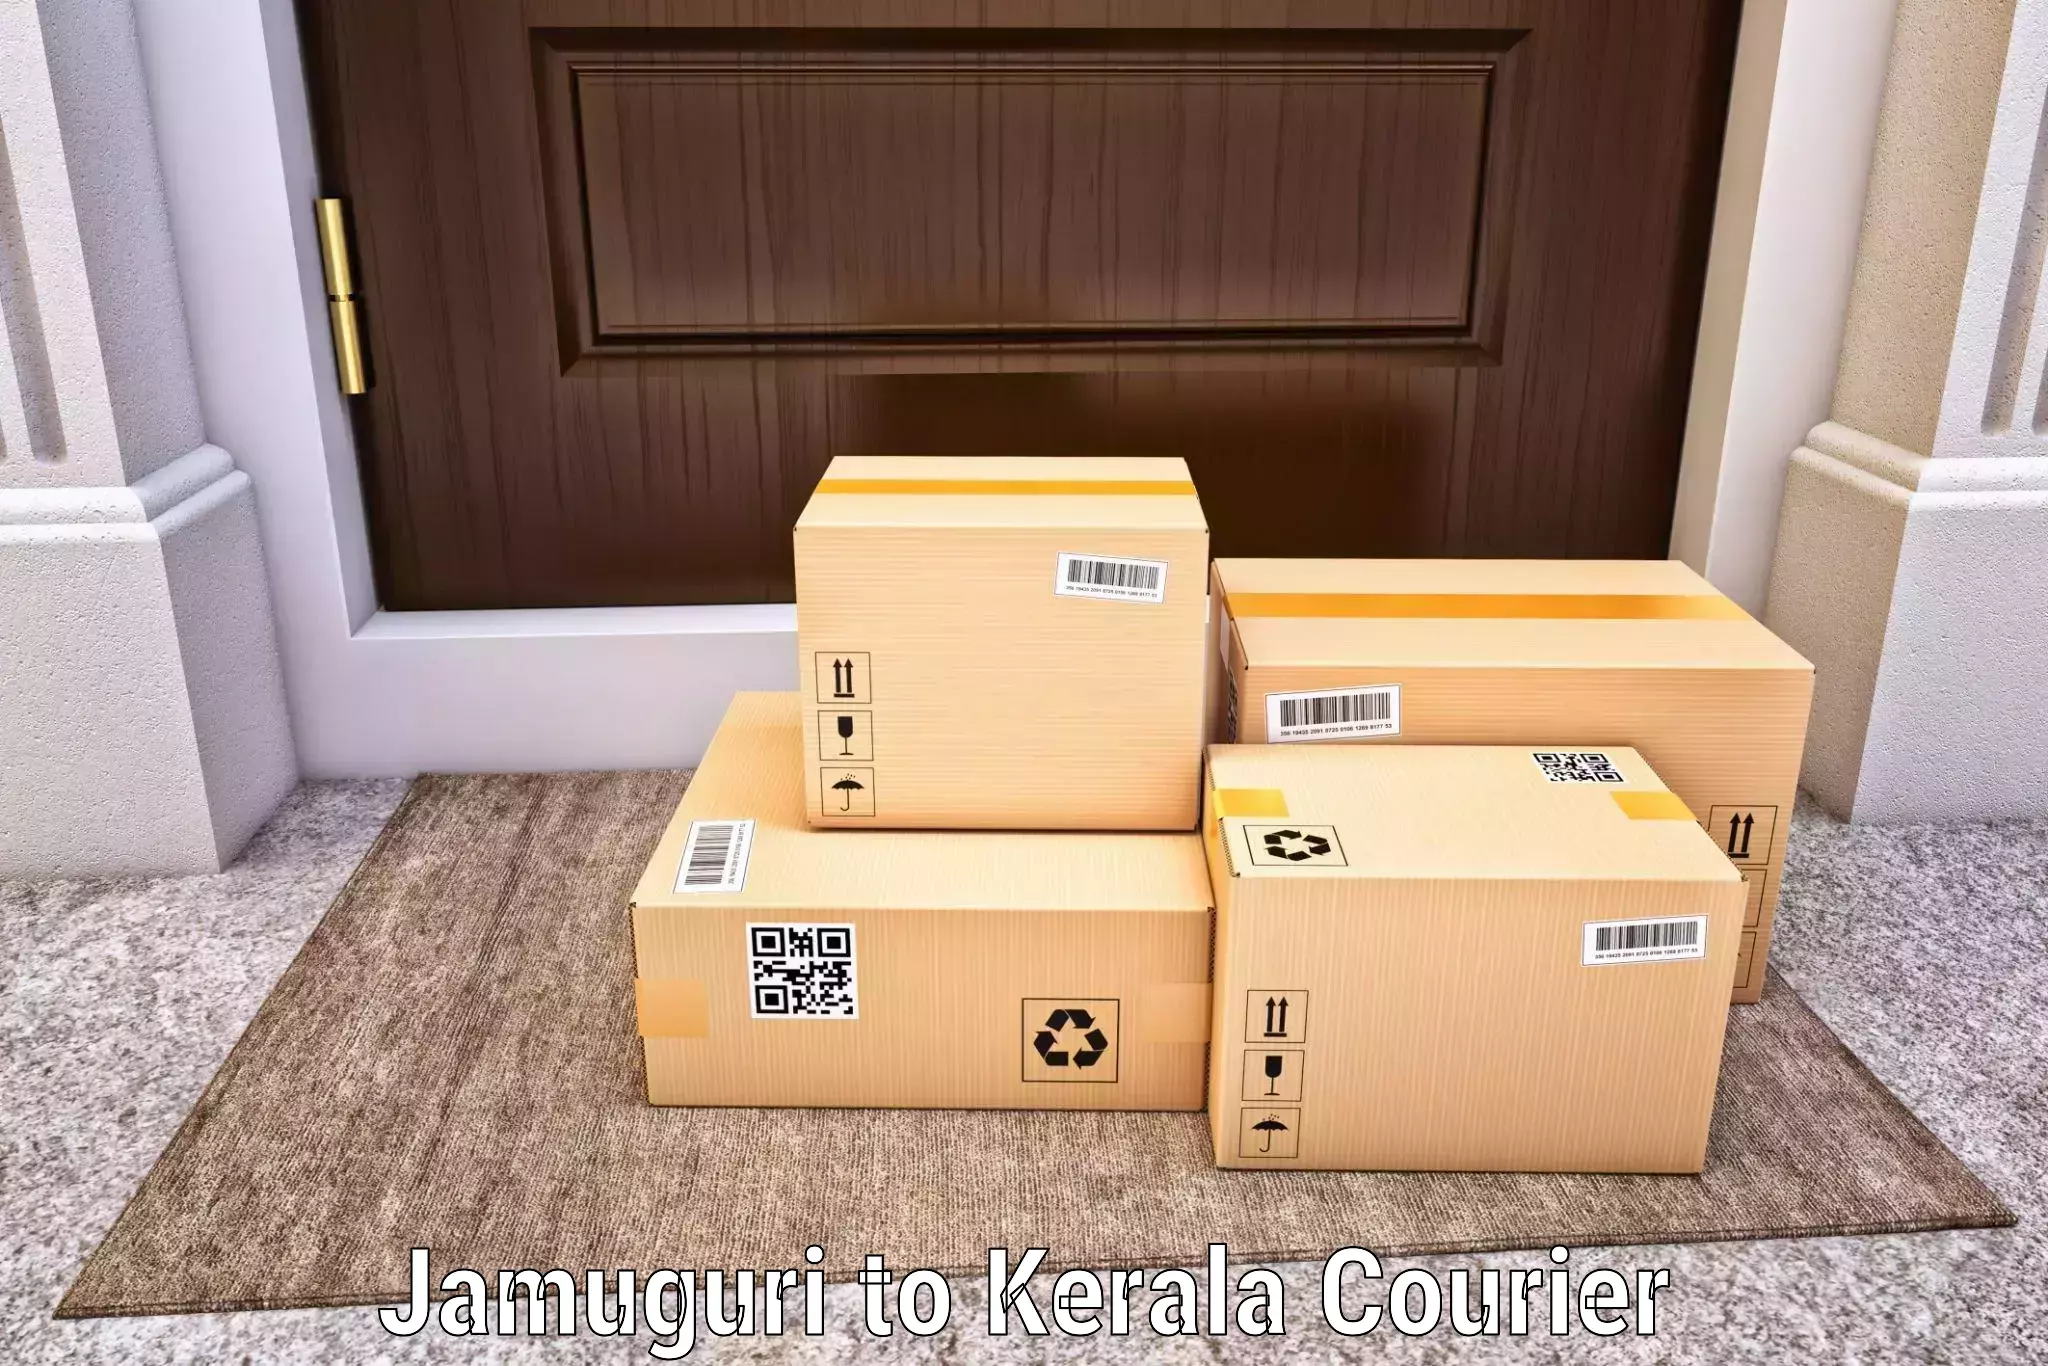 Expedited parcel delivery Jamuguri to Mahatma Gandhi University Kottayam